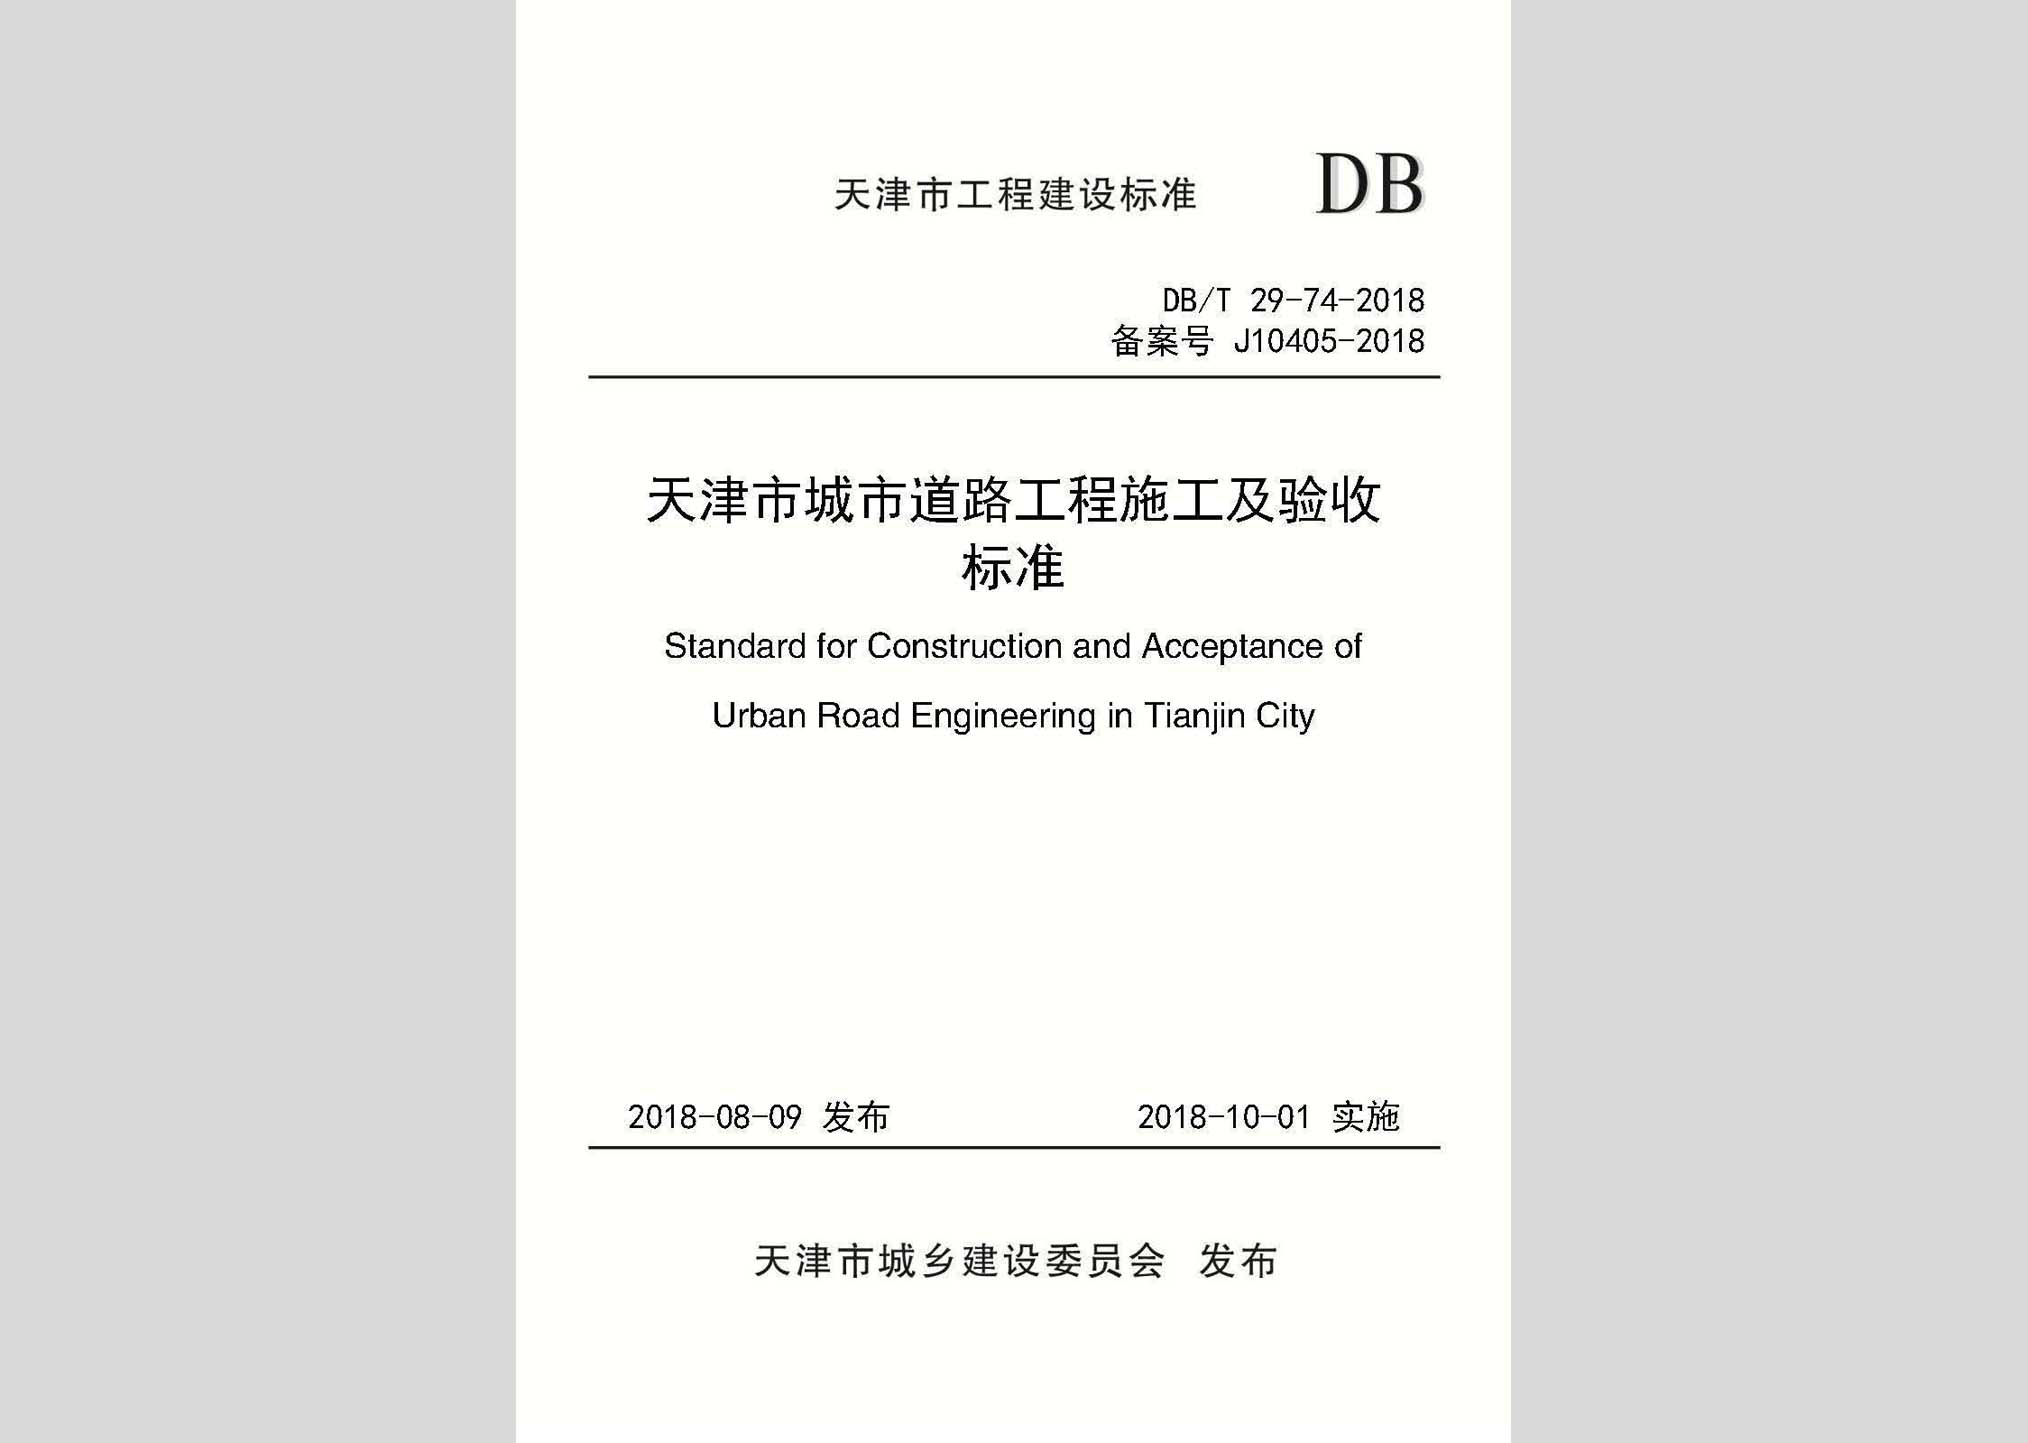 DB/T29-74-2018：天津市城市道路工程施工及验收标准